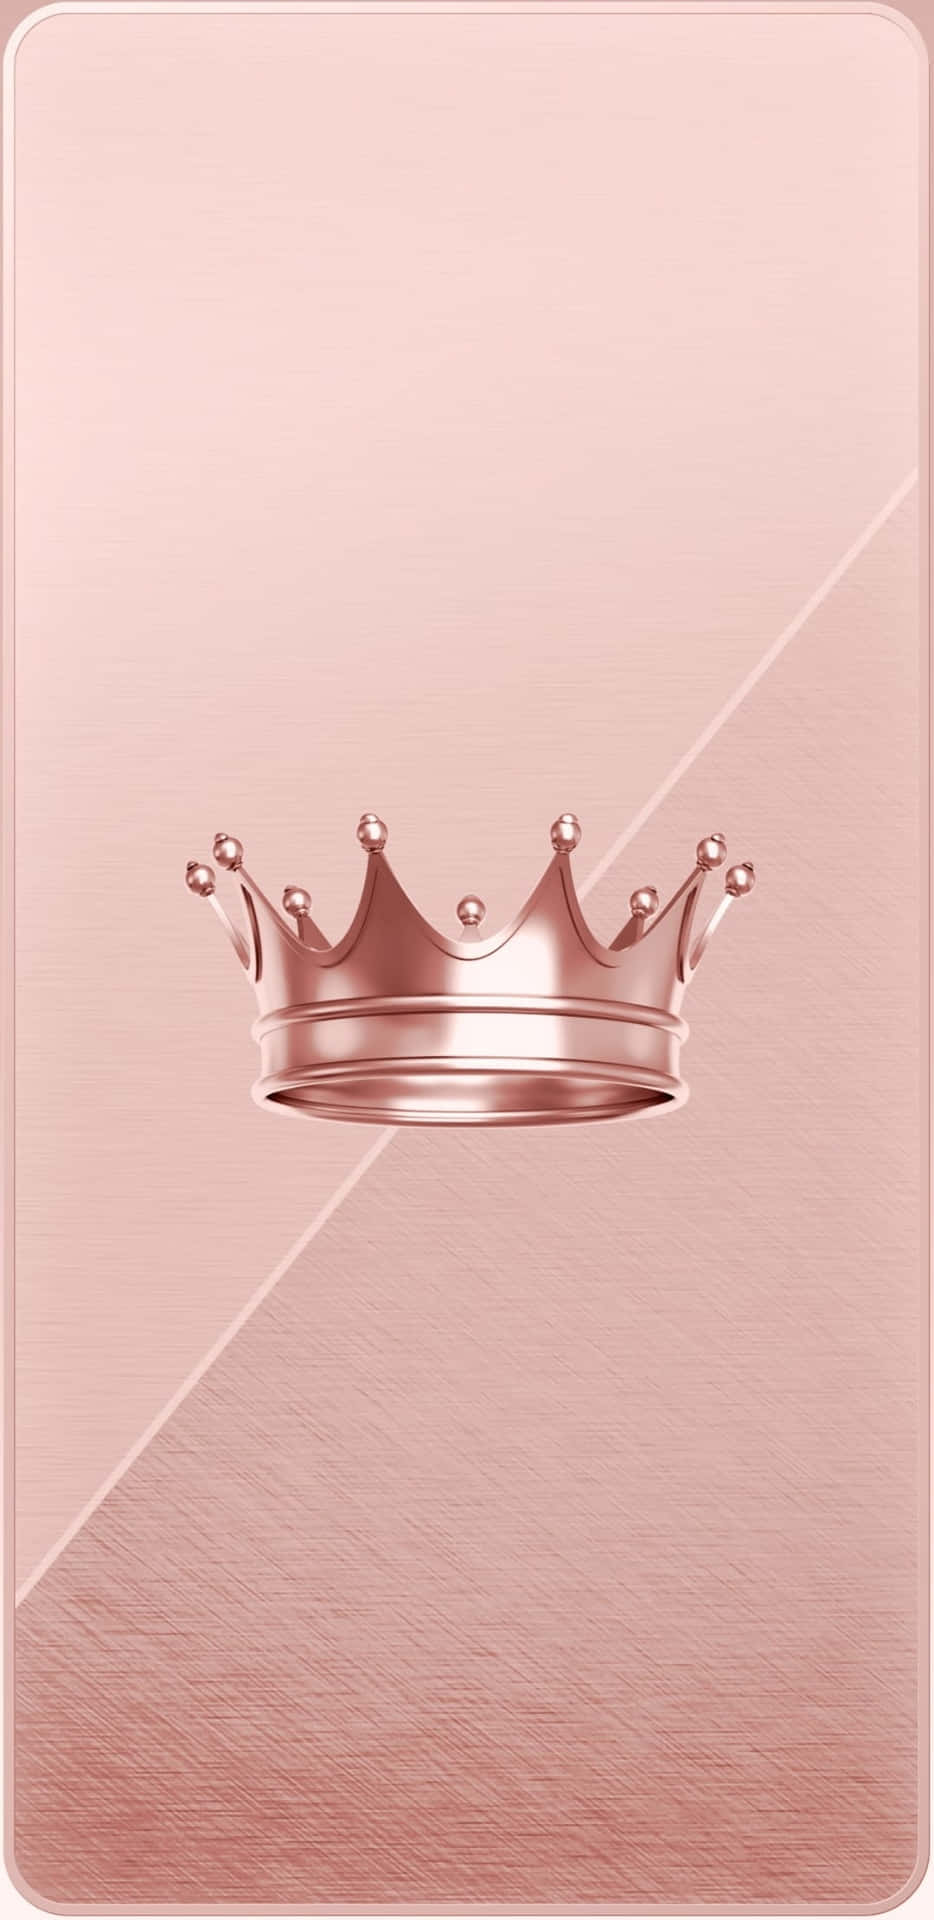 Pyntet med en majestætisk krone, skinnende med ægte skønhed, prinsessen Wallpaper